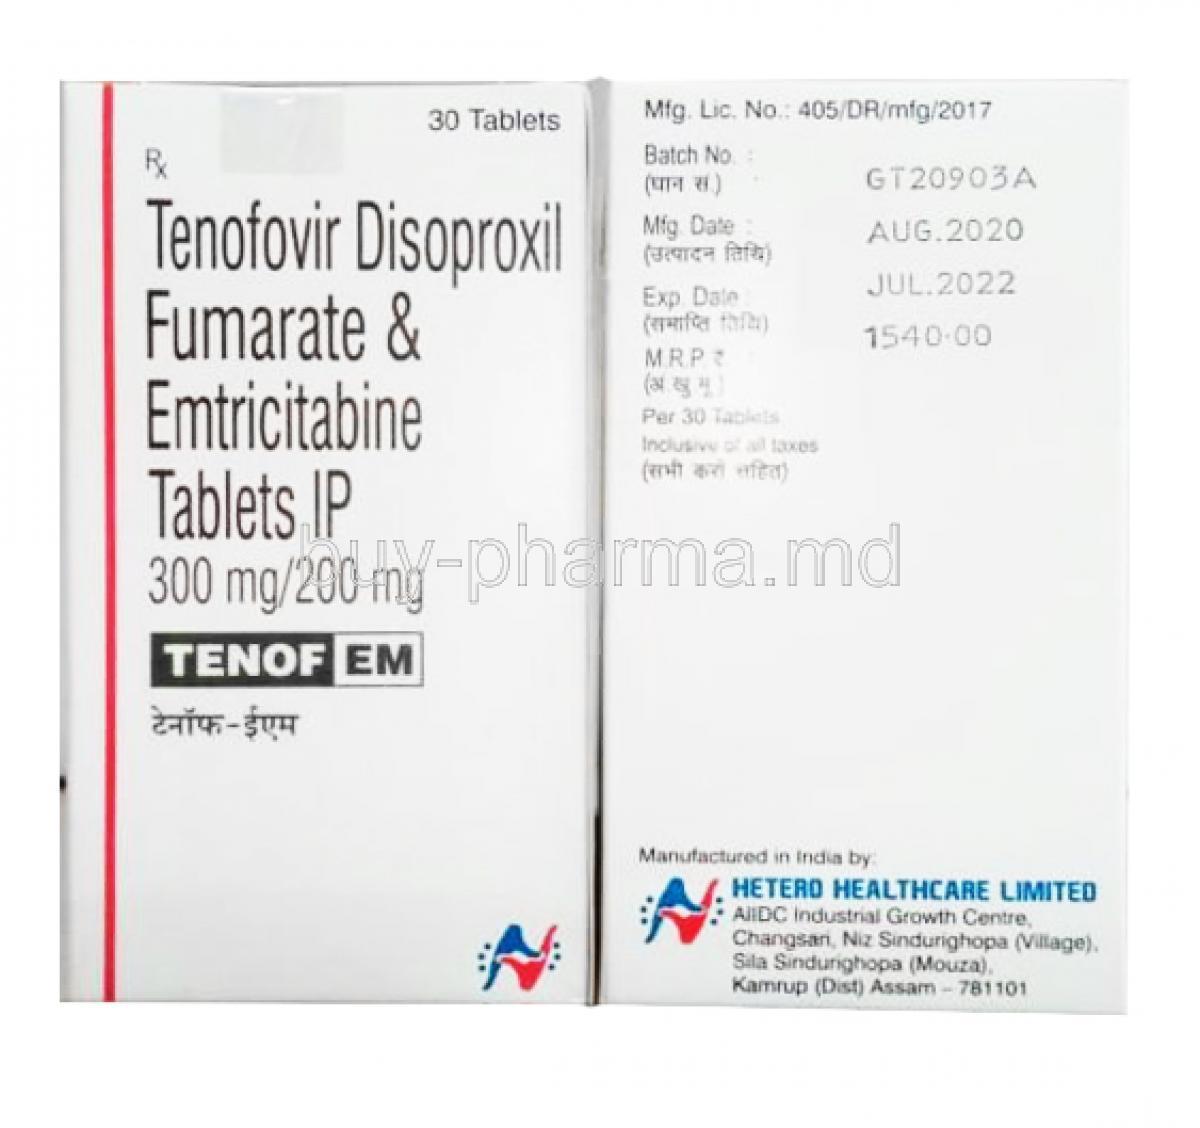 Tafero EM, Emtricitabine Tenofovir box side